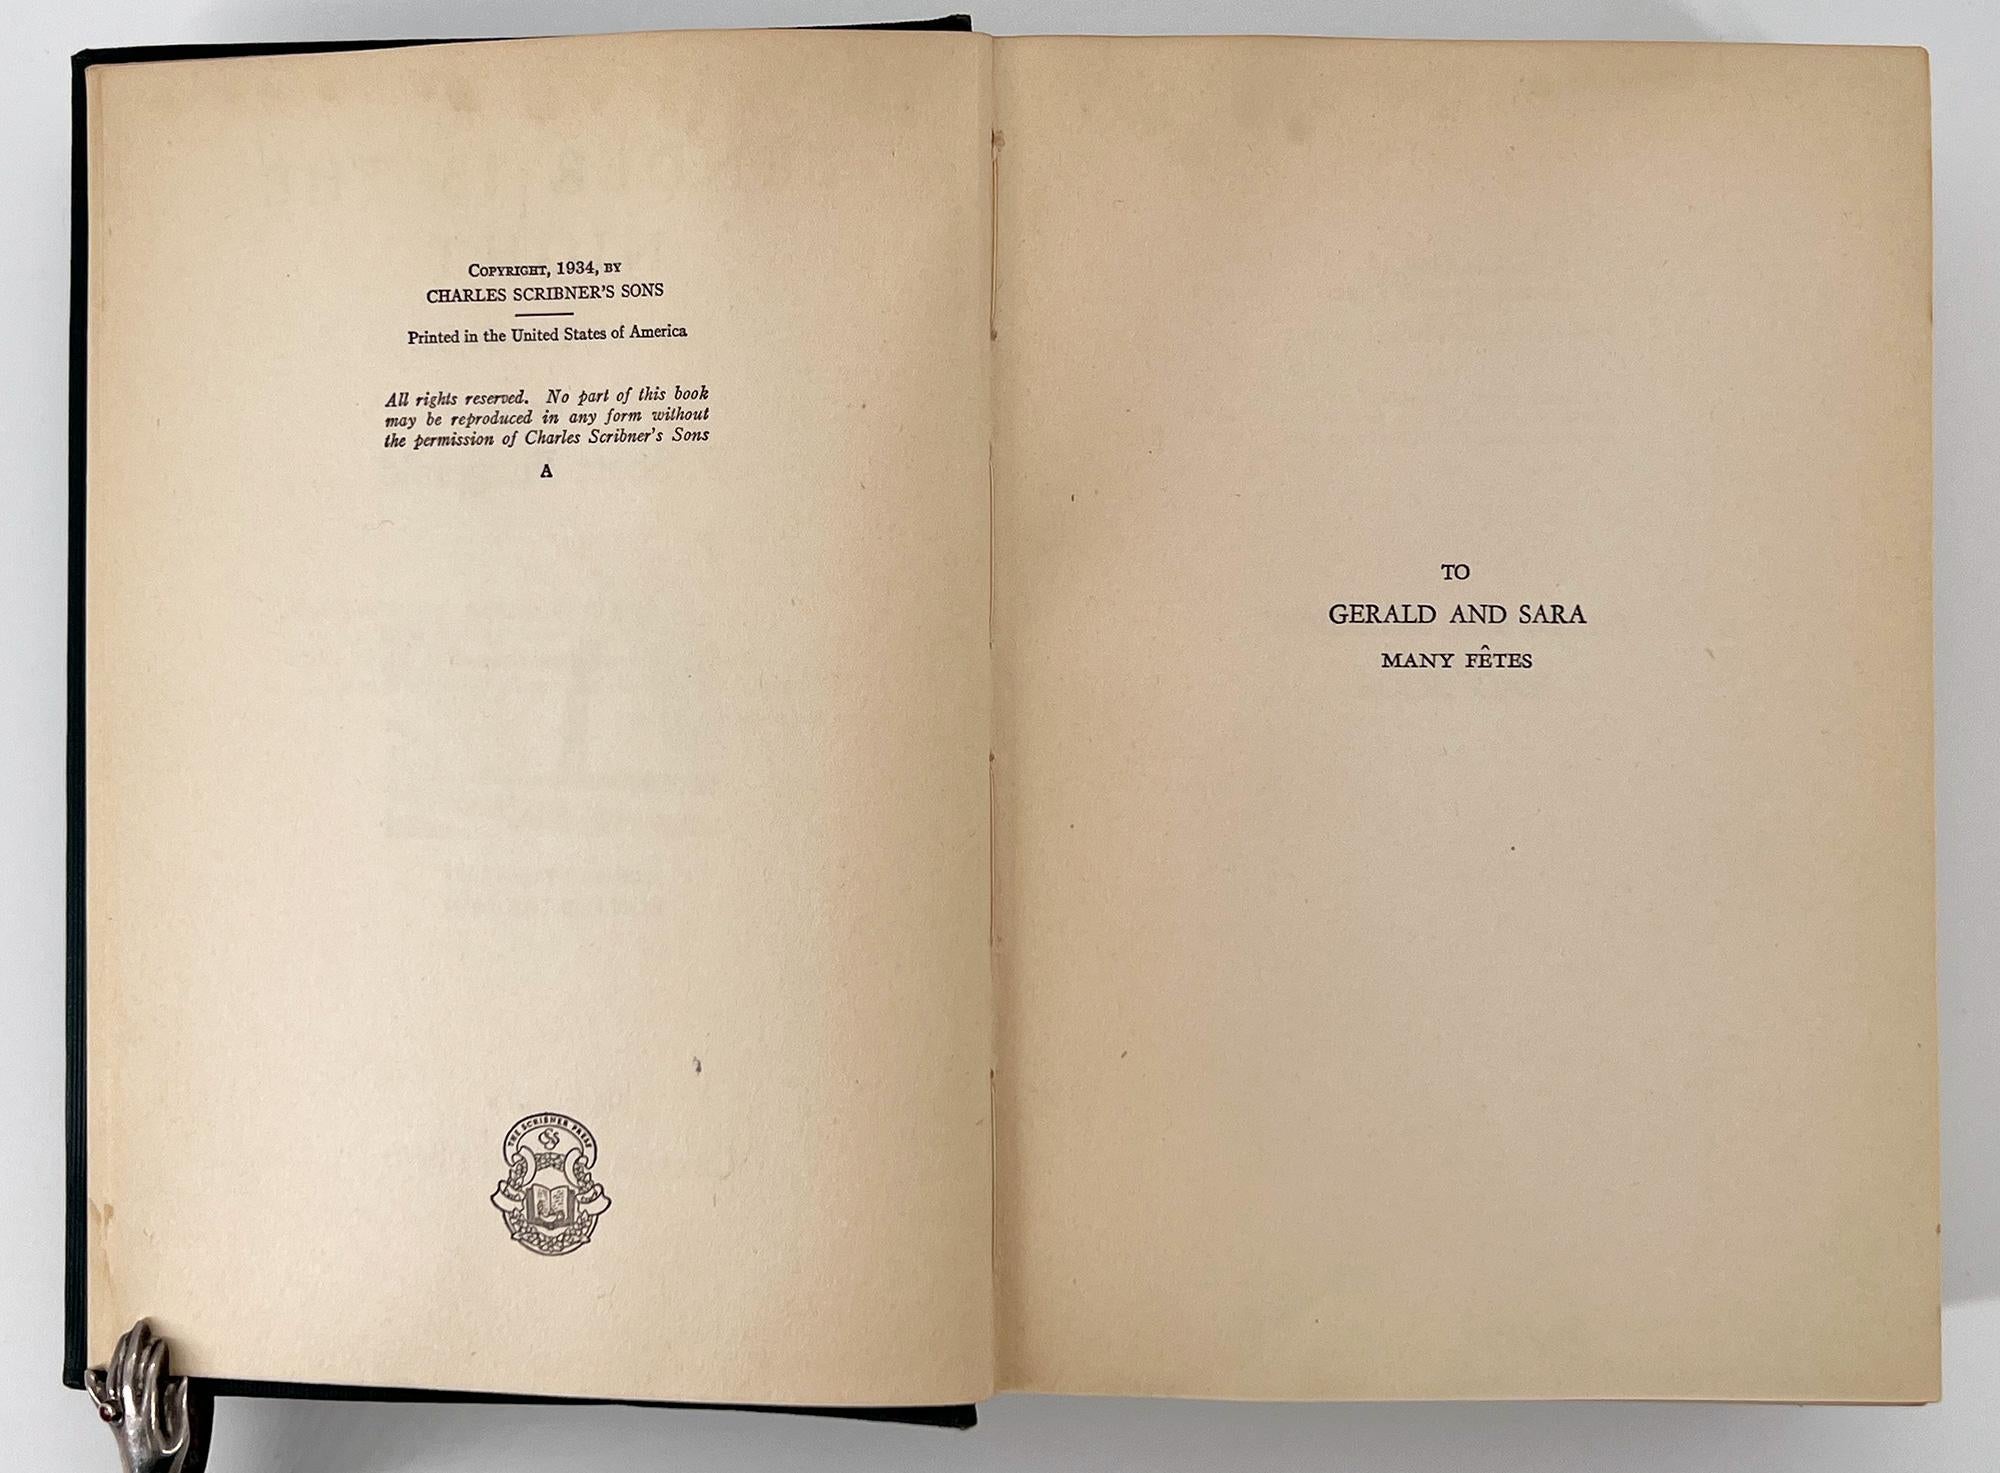 New York : Charles Scribner's Sons, 1934
8vo, 7 1/2 x 5 1/2 pouces (190 x 132 mm) ; pp. vii + 408, imprimé en caractères Old Style sur papier vélin ; dessins à la plume et à l'encre (33 en tête et 35 en queue) d'Edward Shenton (1895-1977). Reliure